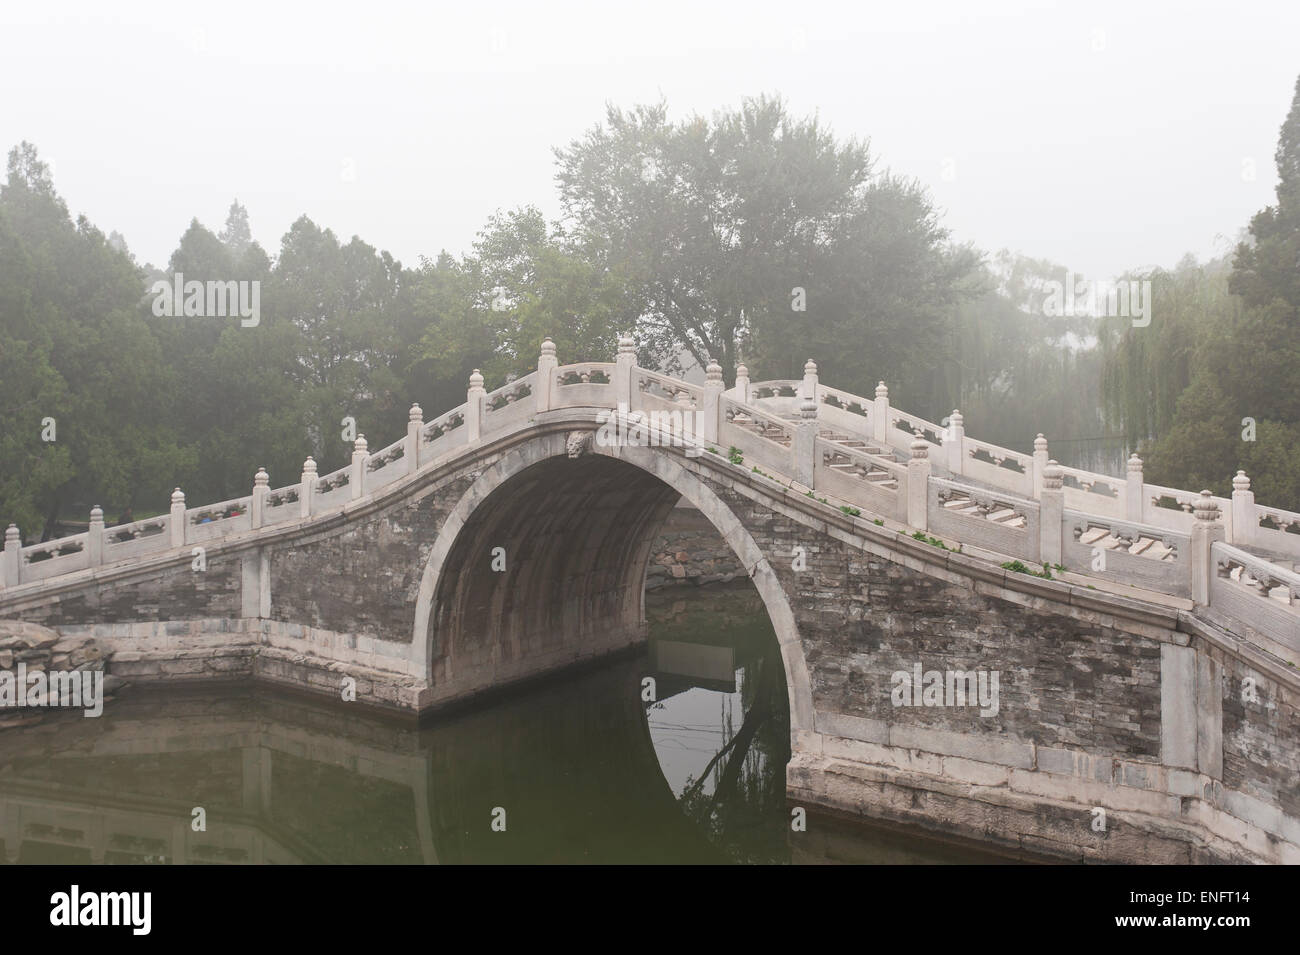 Brouillard, arch bridge, jardin chinois, art nouveau Palais d'été, Pékin, Chine Banque D'Images